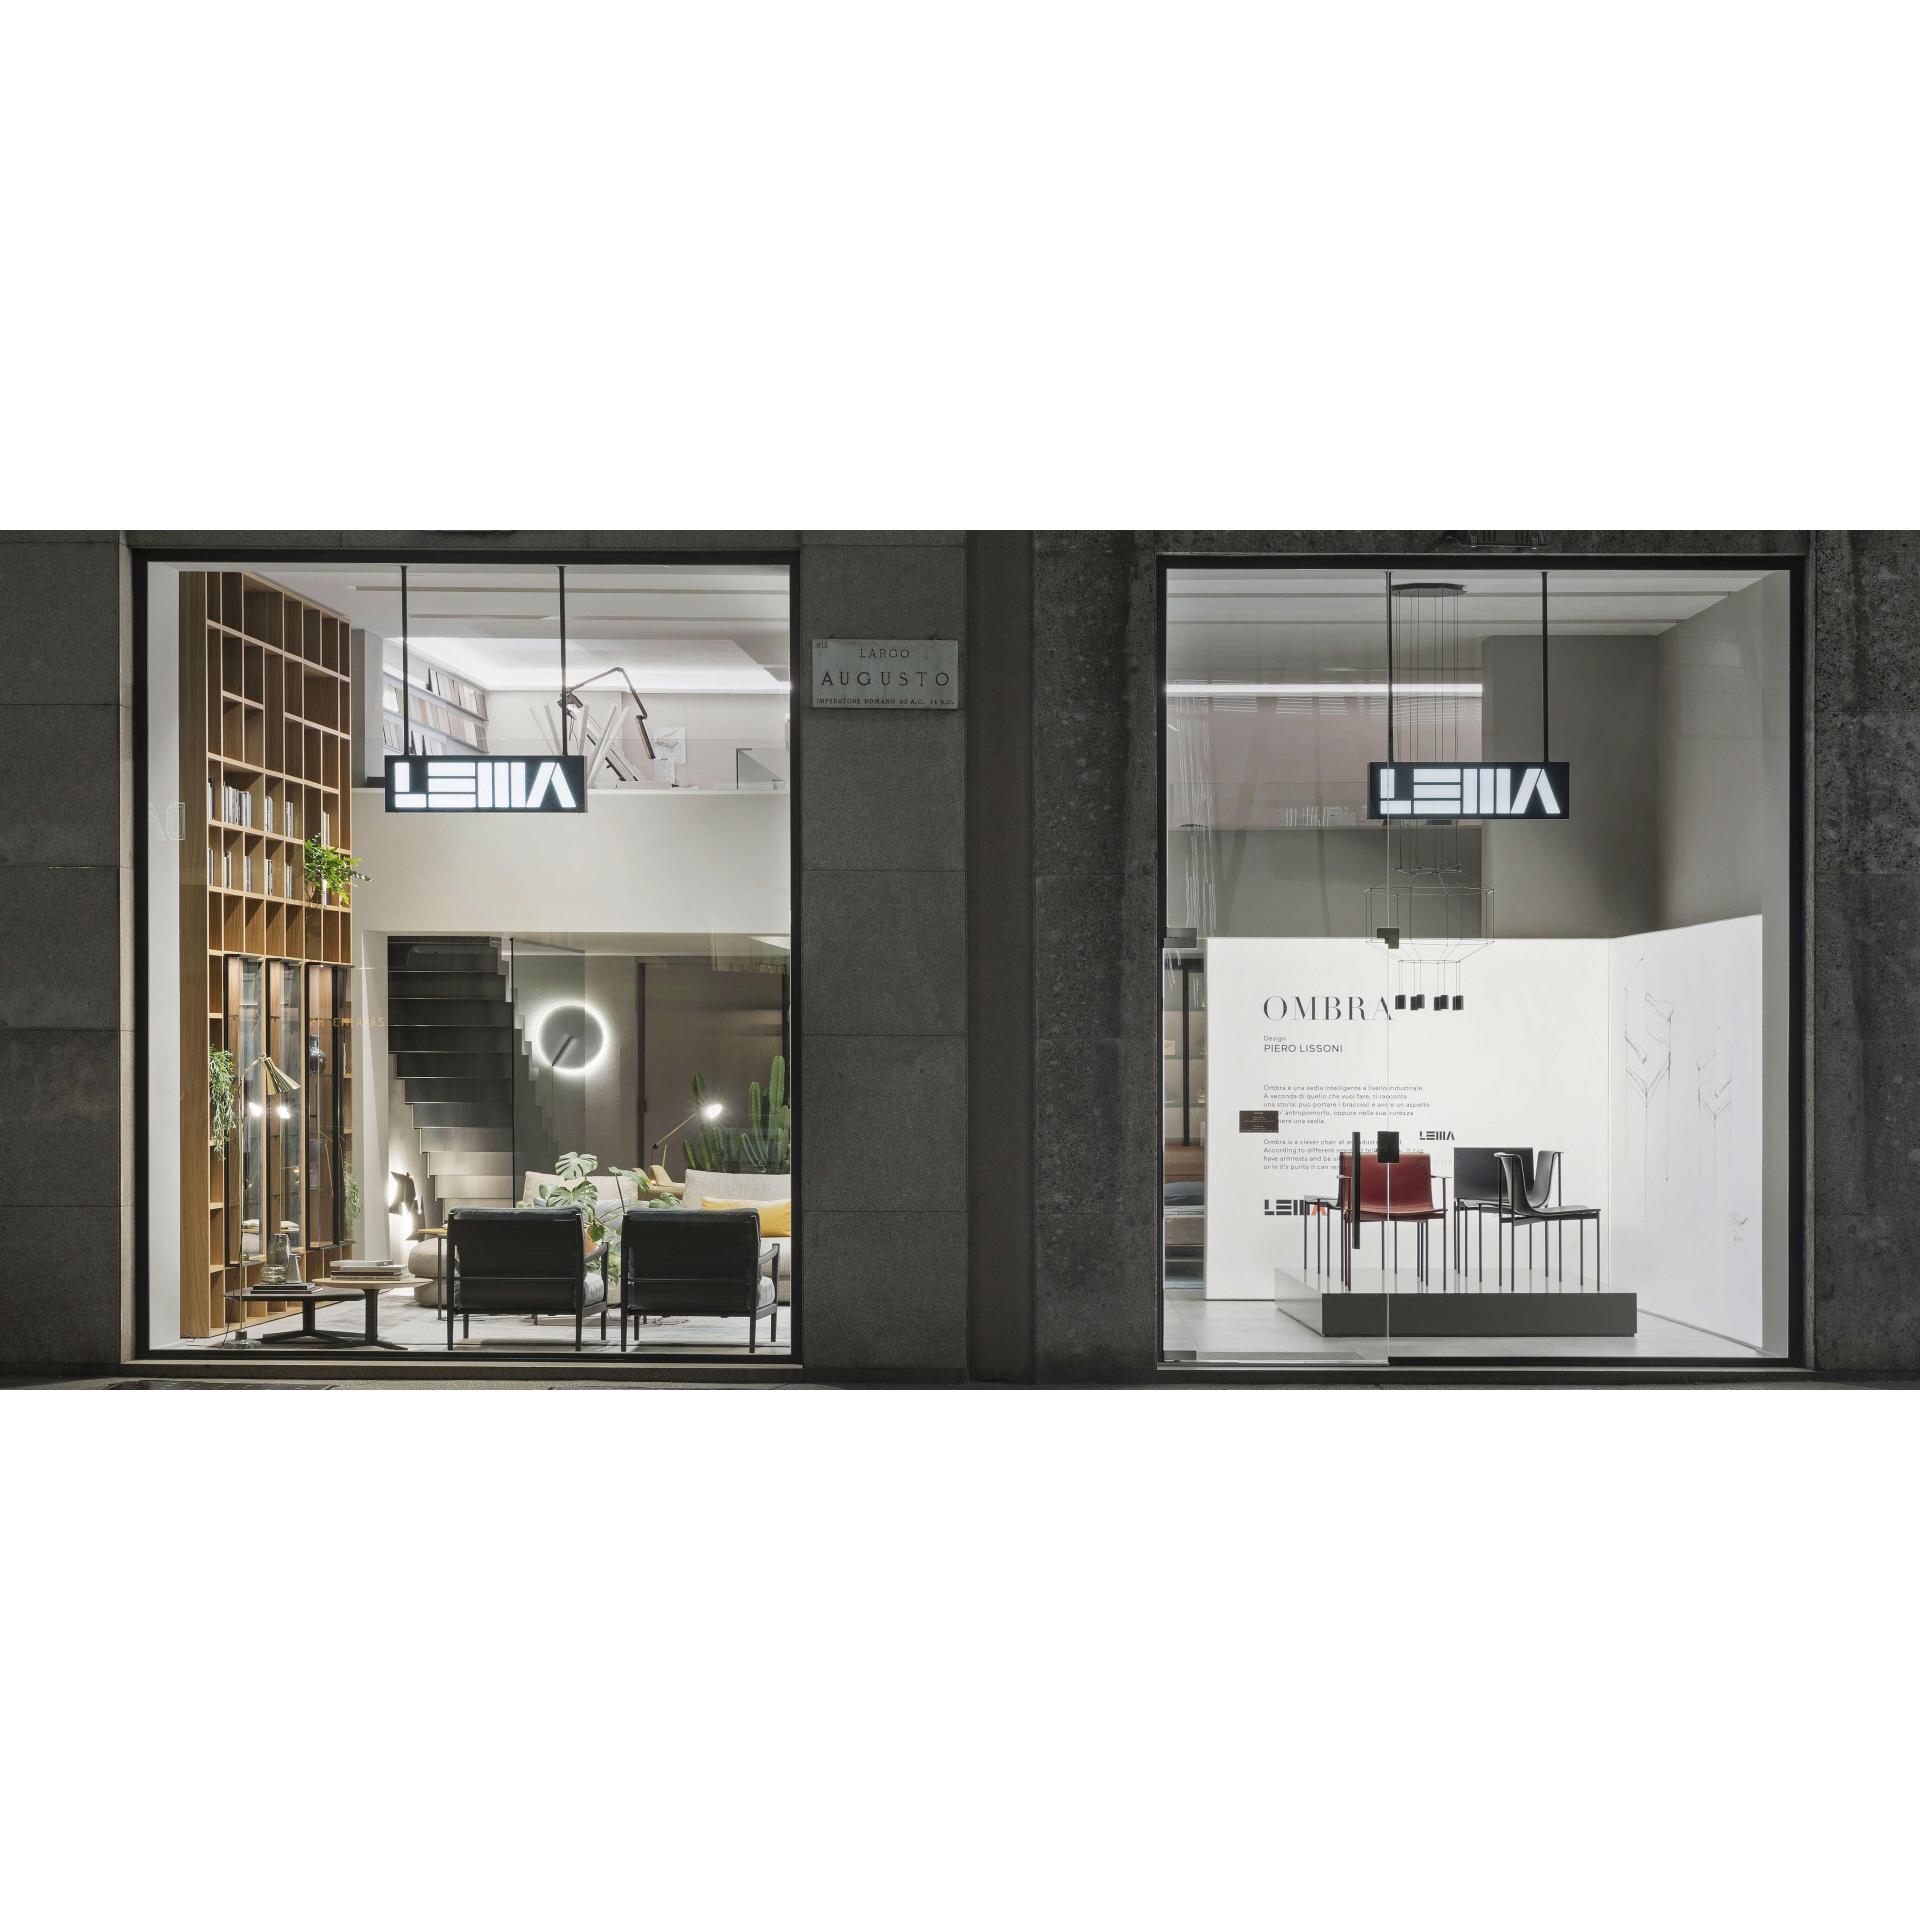 Lema se prepara para inaugurar su tienda de Milán, totalmente renovada